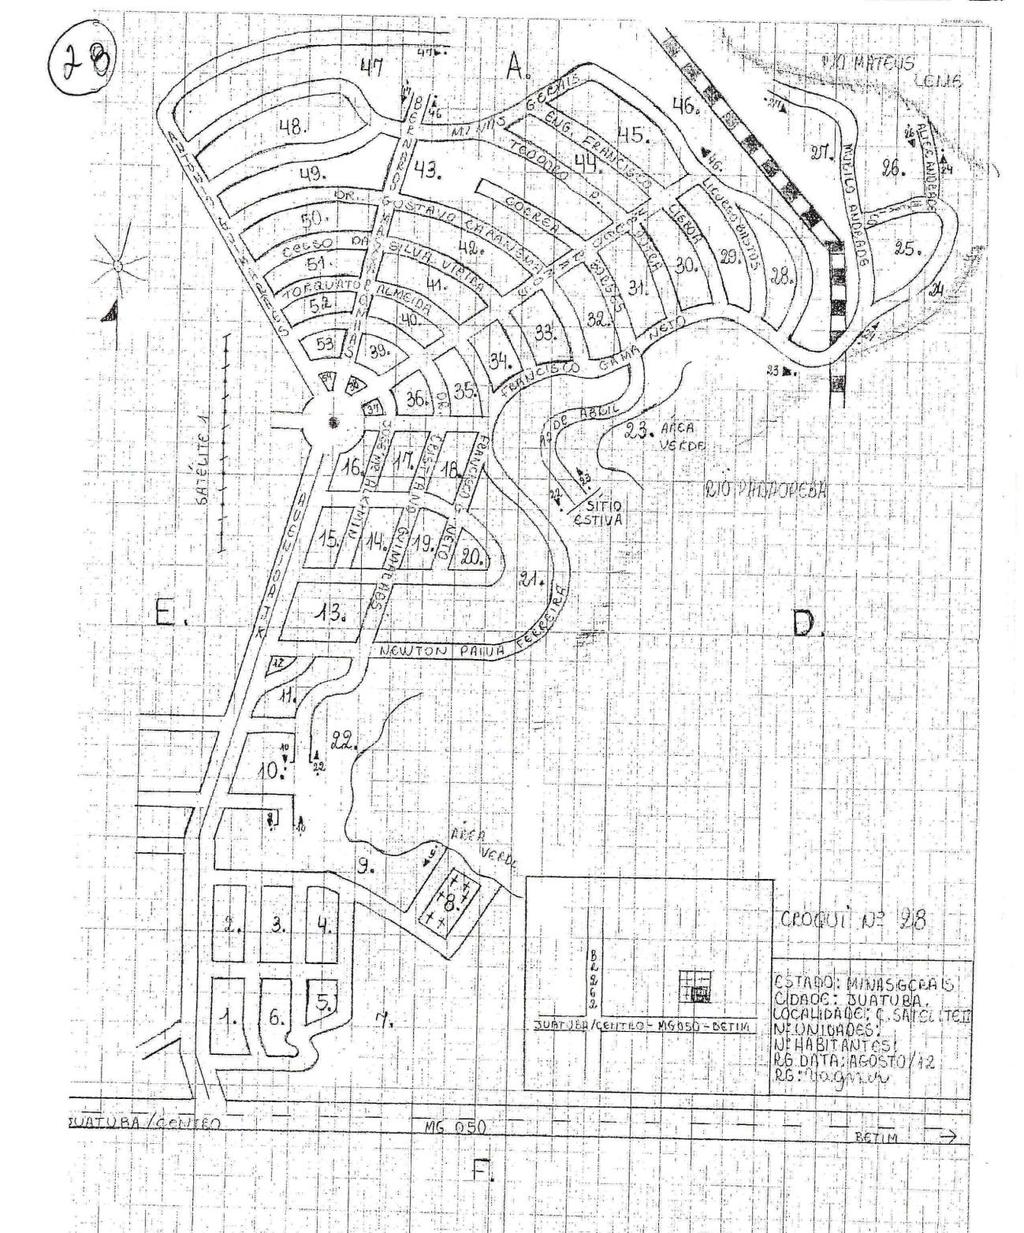 Anexo 5: Mapa do bairro Satélite I, integrante da Área Experimental do estudo, município